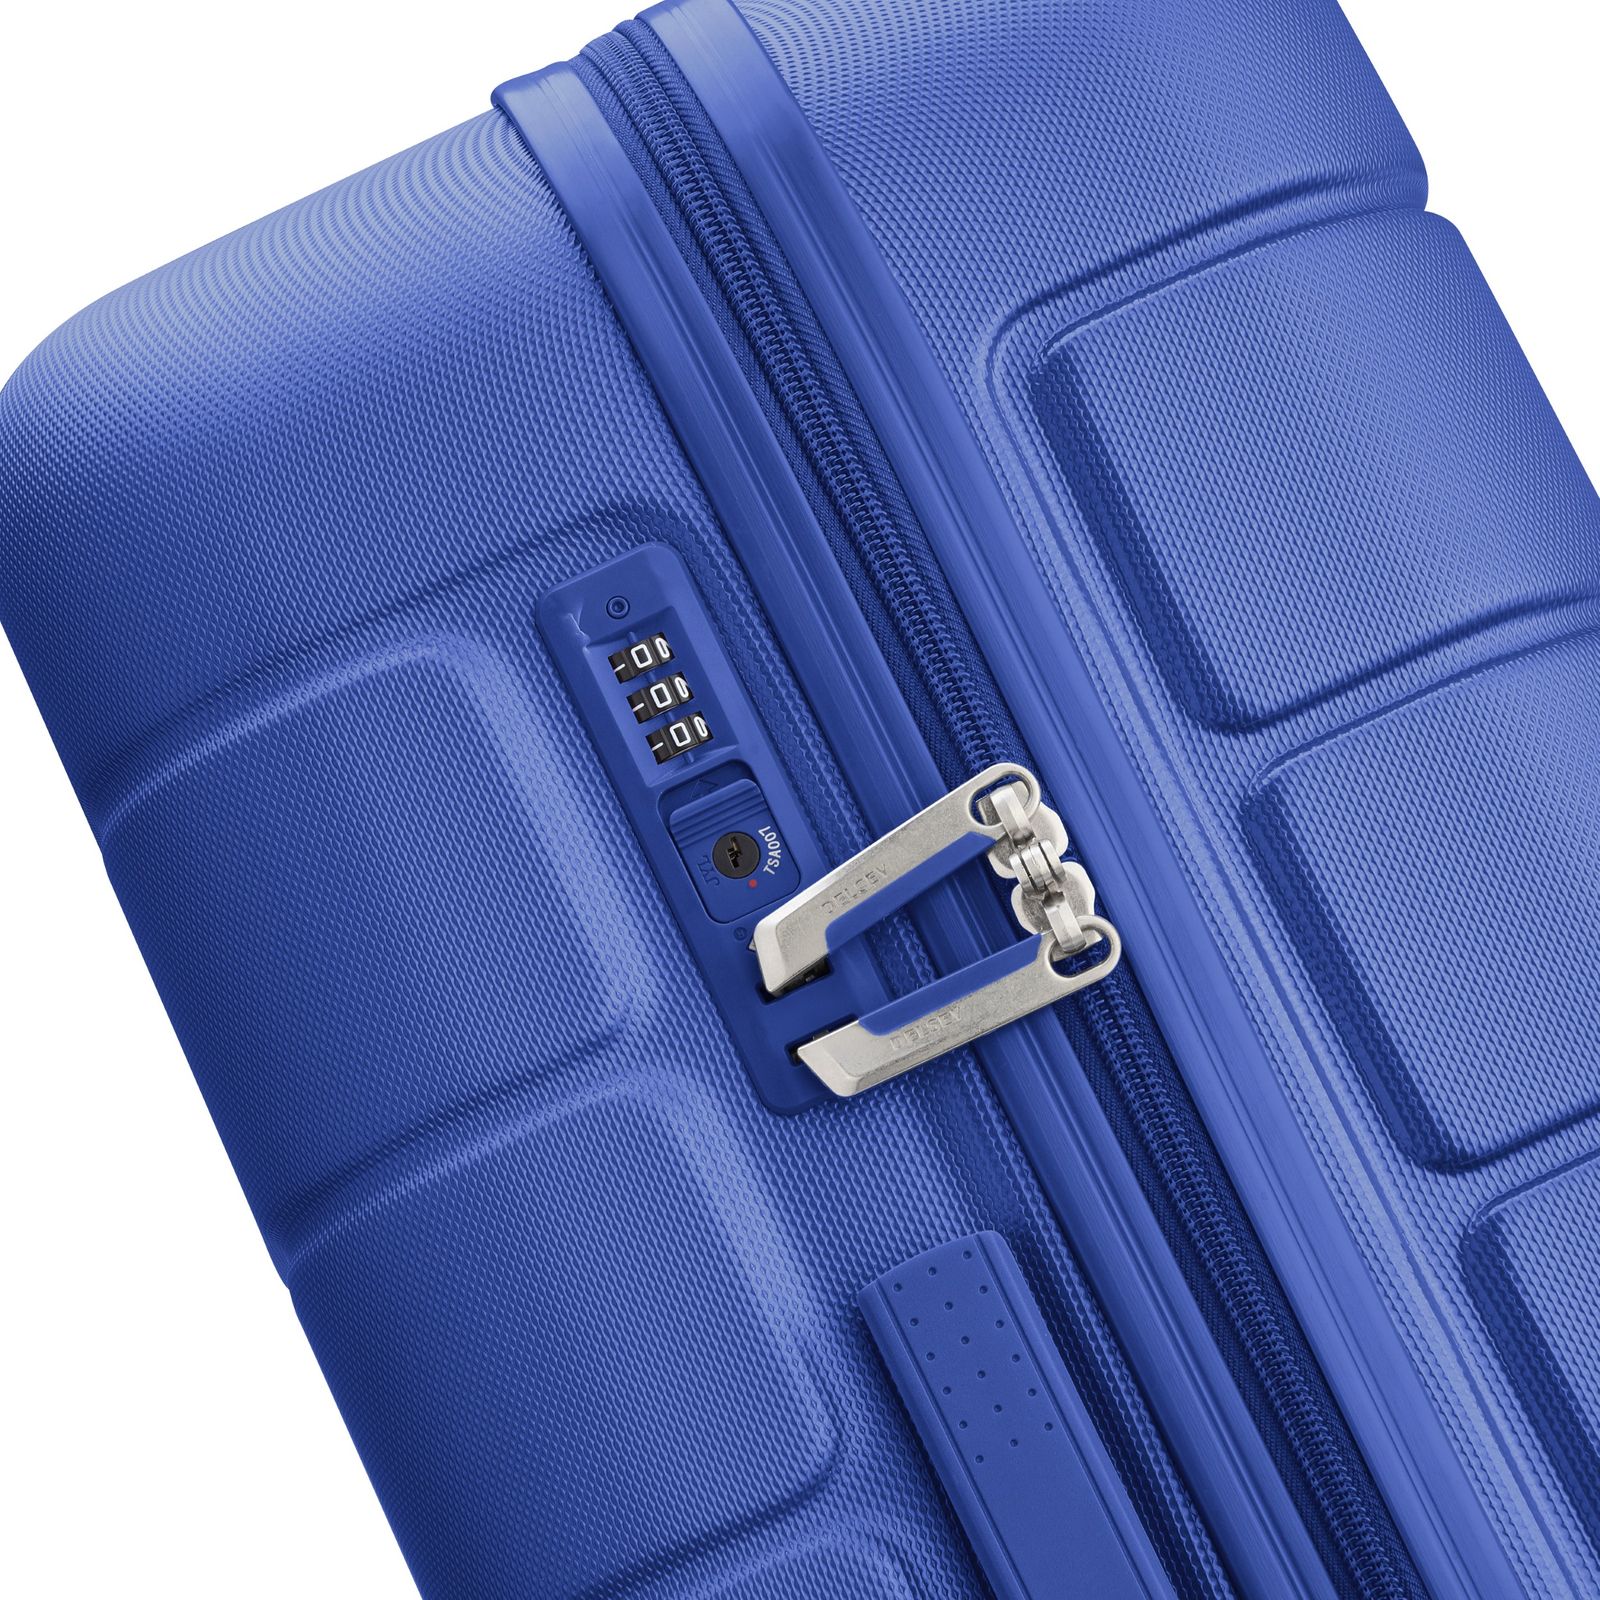 چمدان دلسی مدل LAGOS کد 3870801 سایز کوچک -  - 18